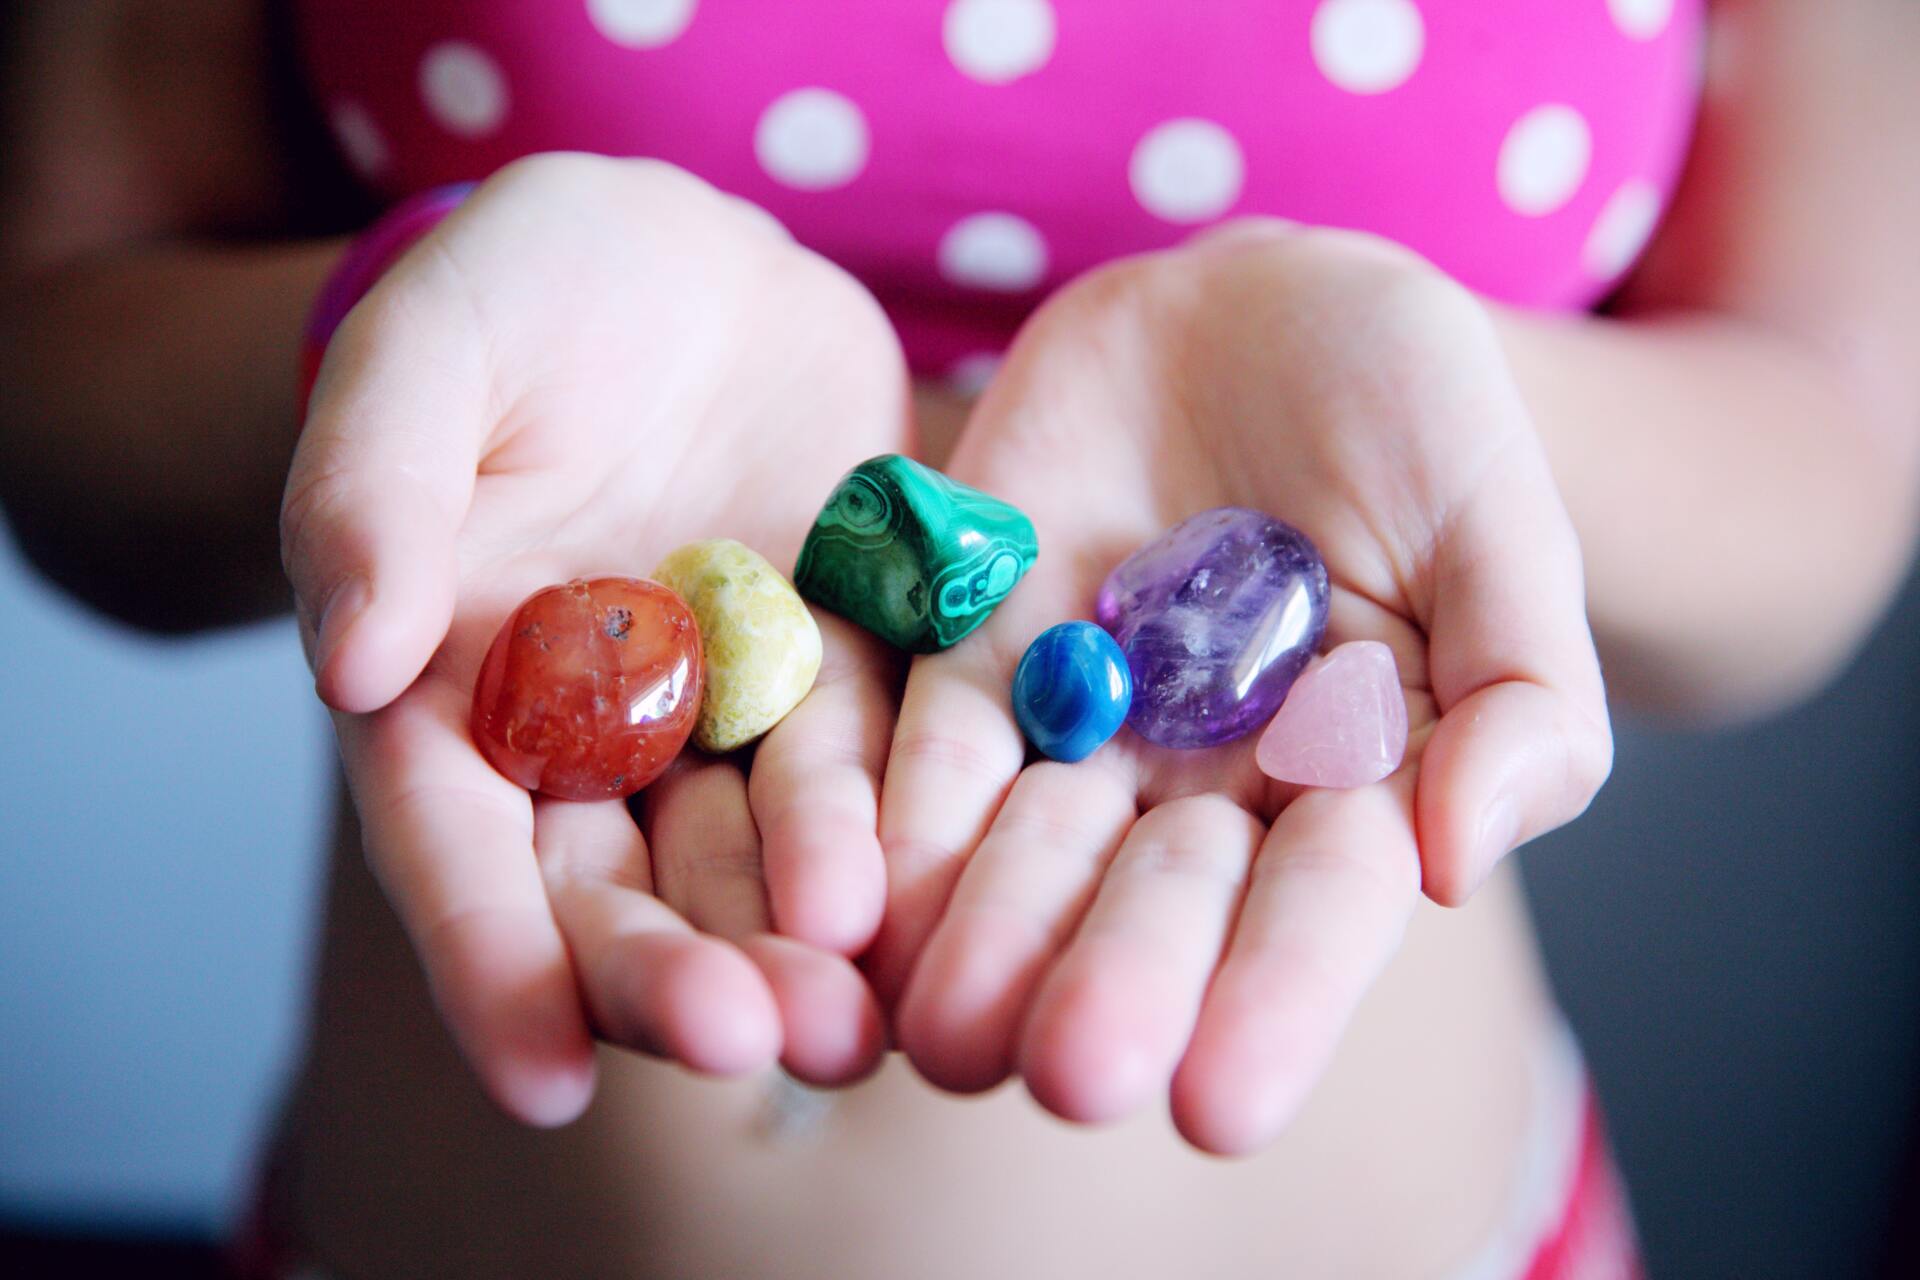 Mulit-colored stones in open hands